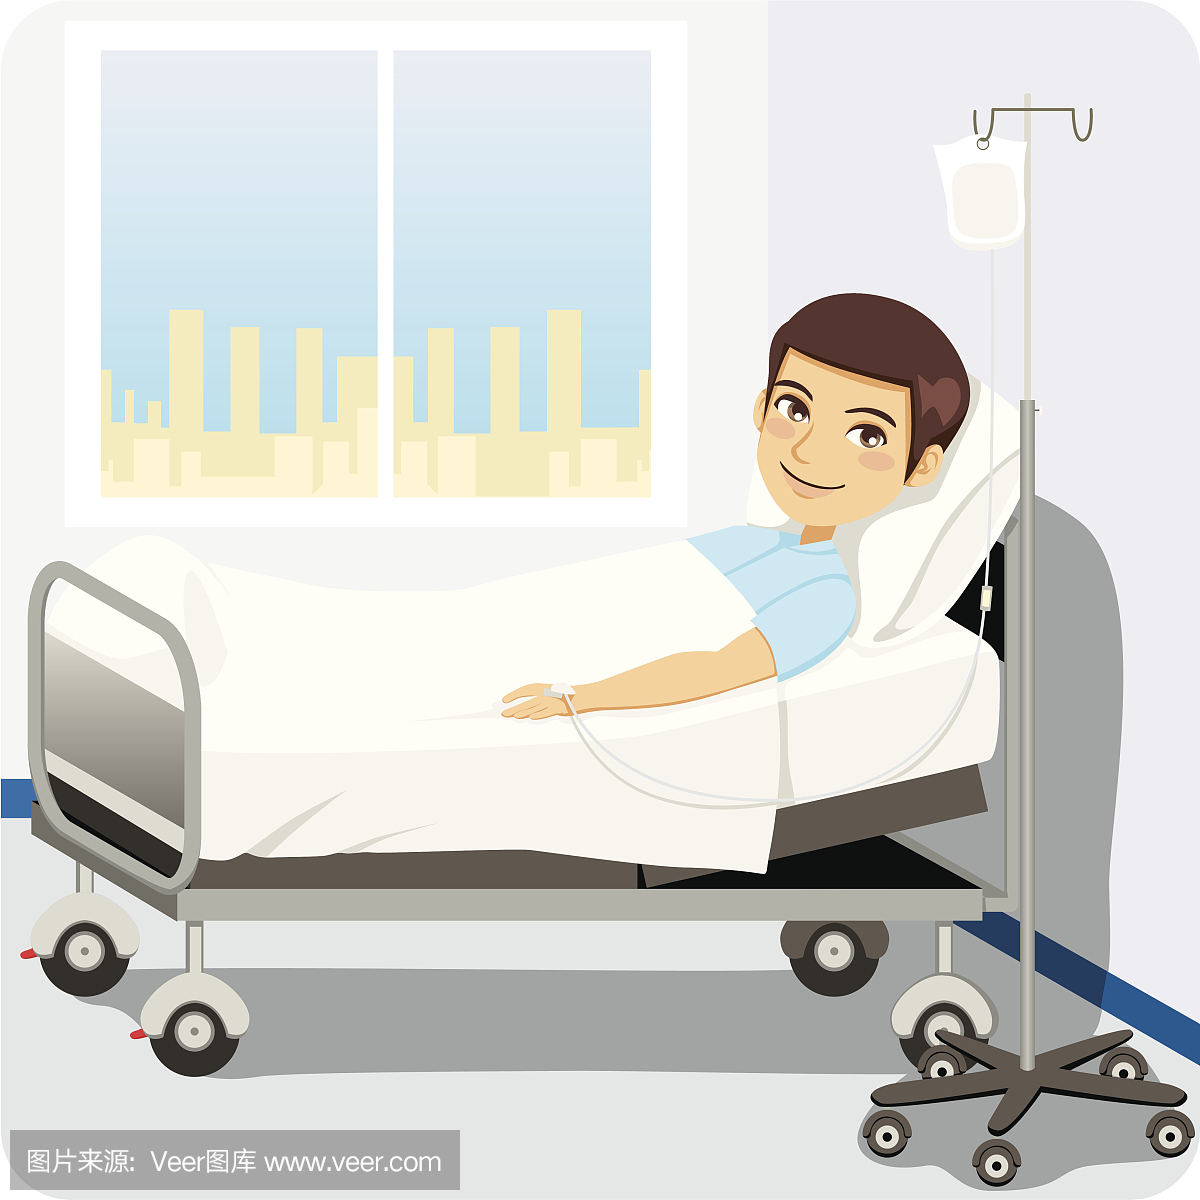 病人躺在床上。生病的卡通人物在医院病床急救程序中帮助病人准确矢量病人俯视图插画图片素材_ID:418243392-Veer图库